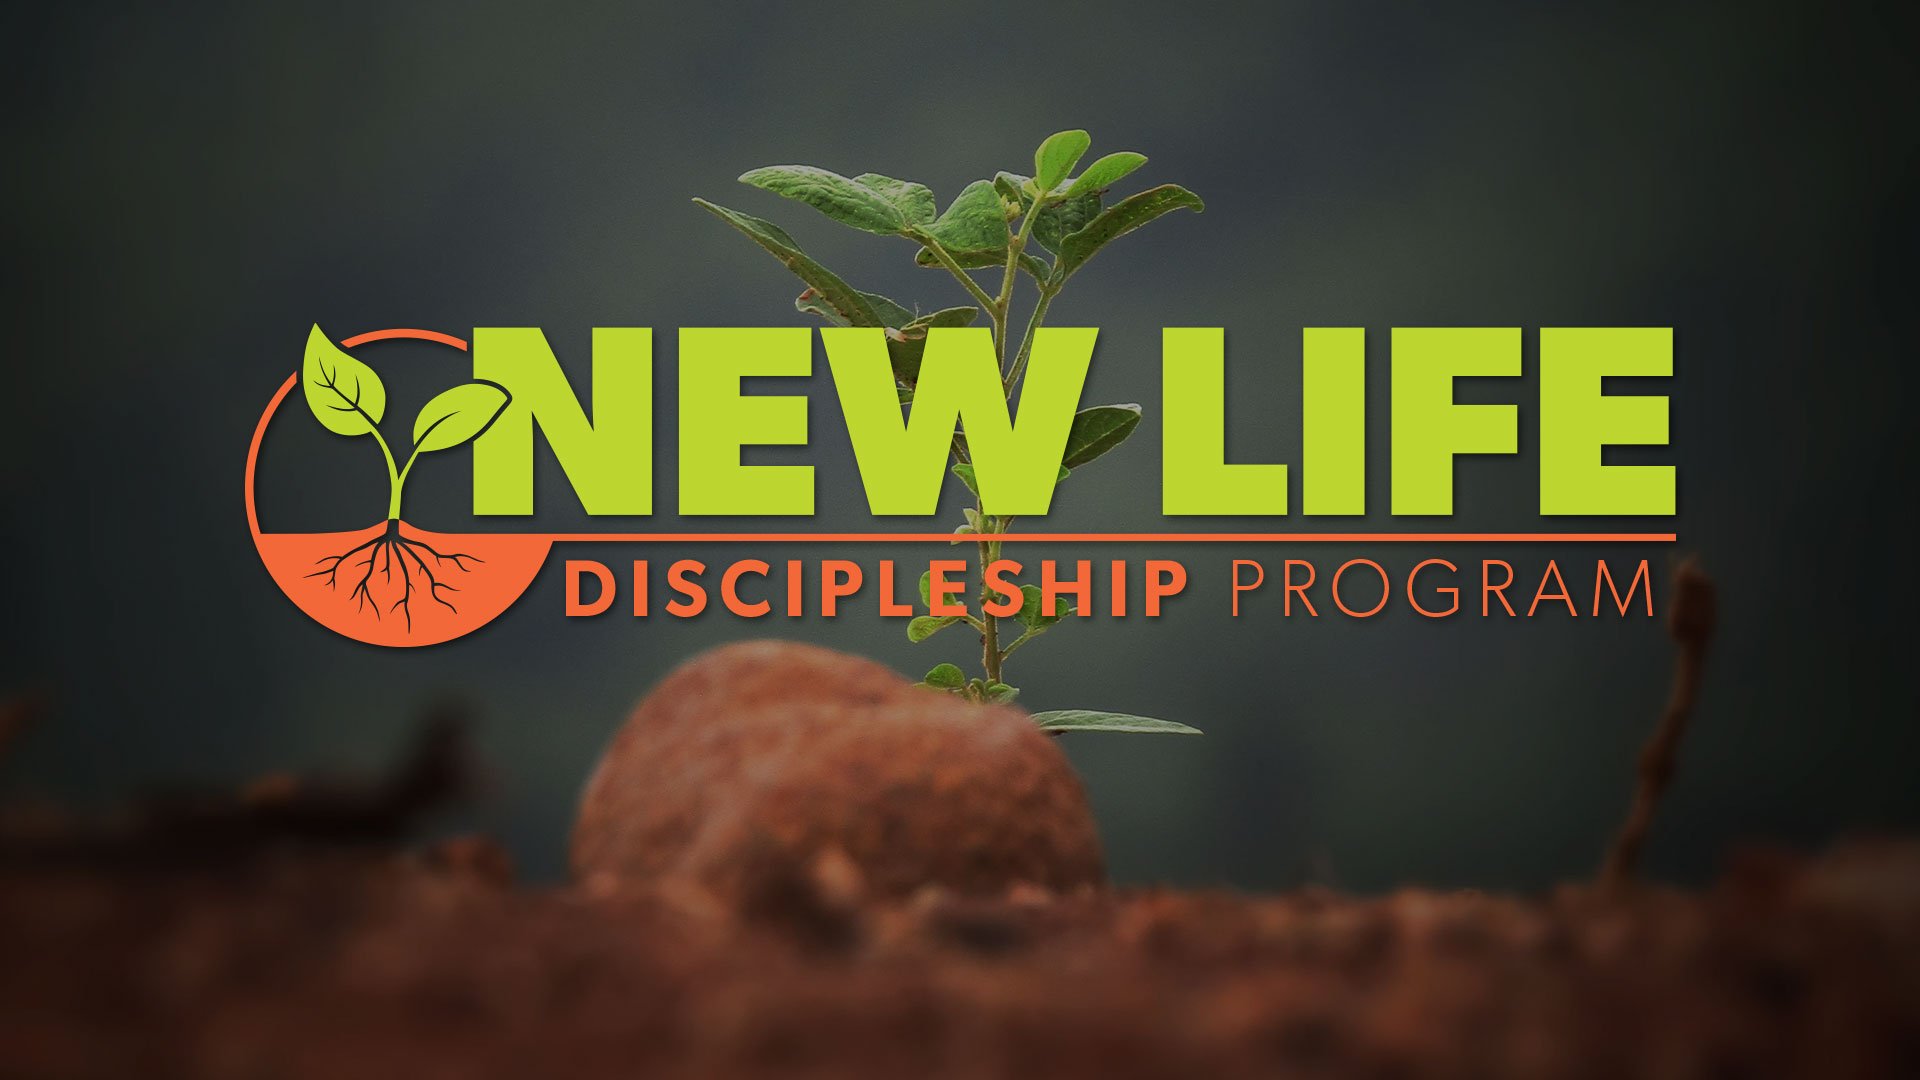 NEW-LIFE_Discipleship_Program.jpg